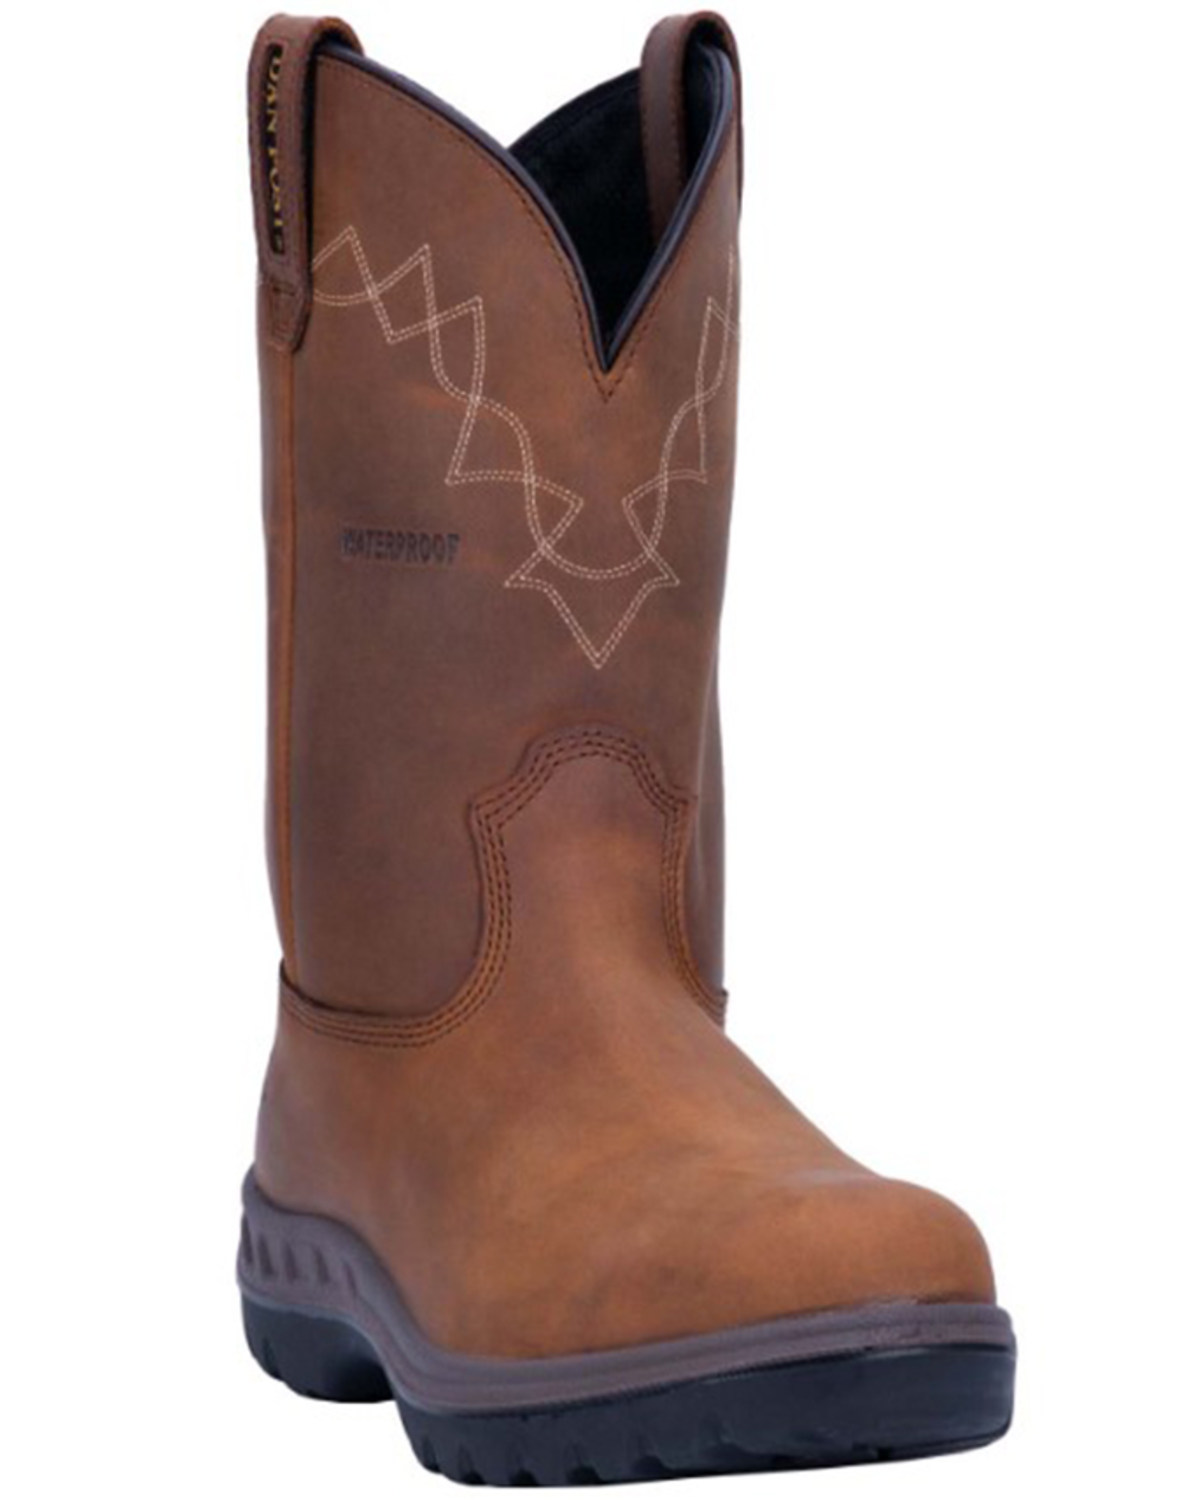 Dan Post Men's Cummins Waterproof Western Work Boots - Soft Toe